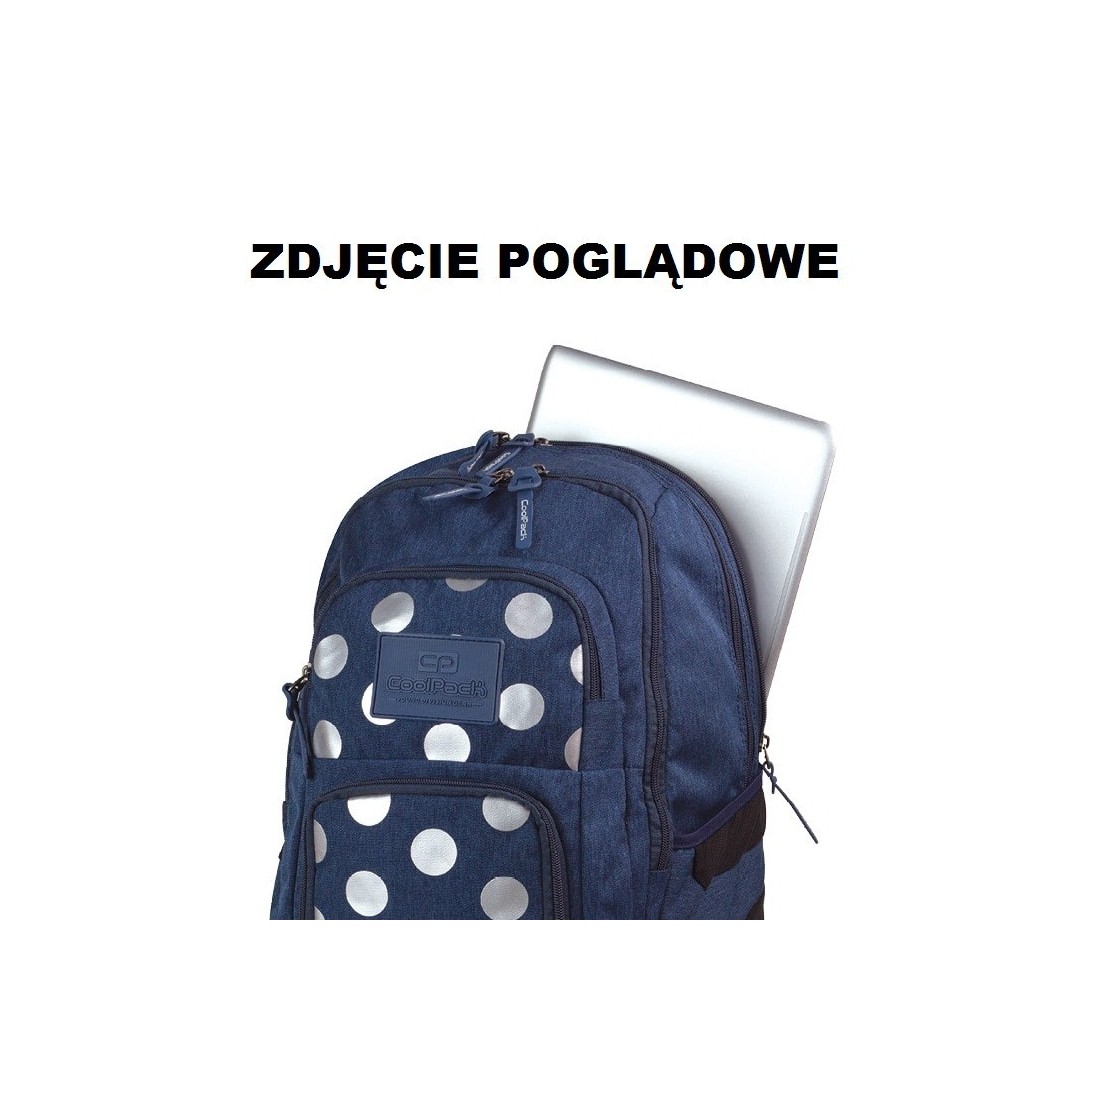 Plecak młodzieżowy CoolPack 704 Unit Silver Dots Pink dla dziewczyny - plecak-tornister.pl